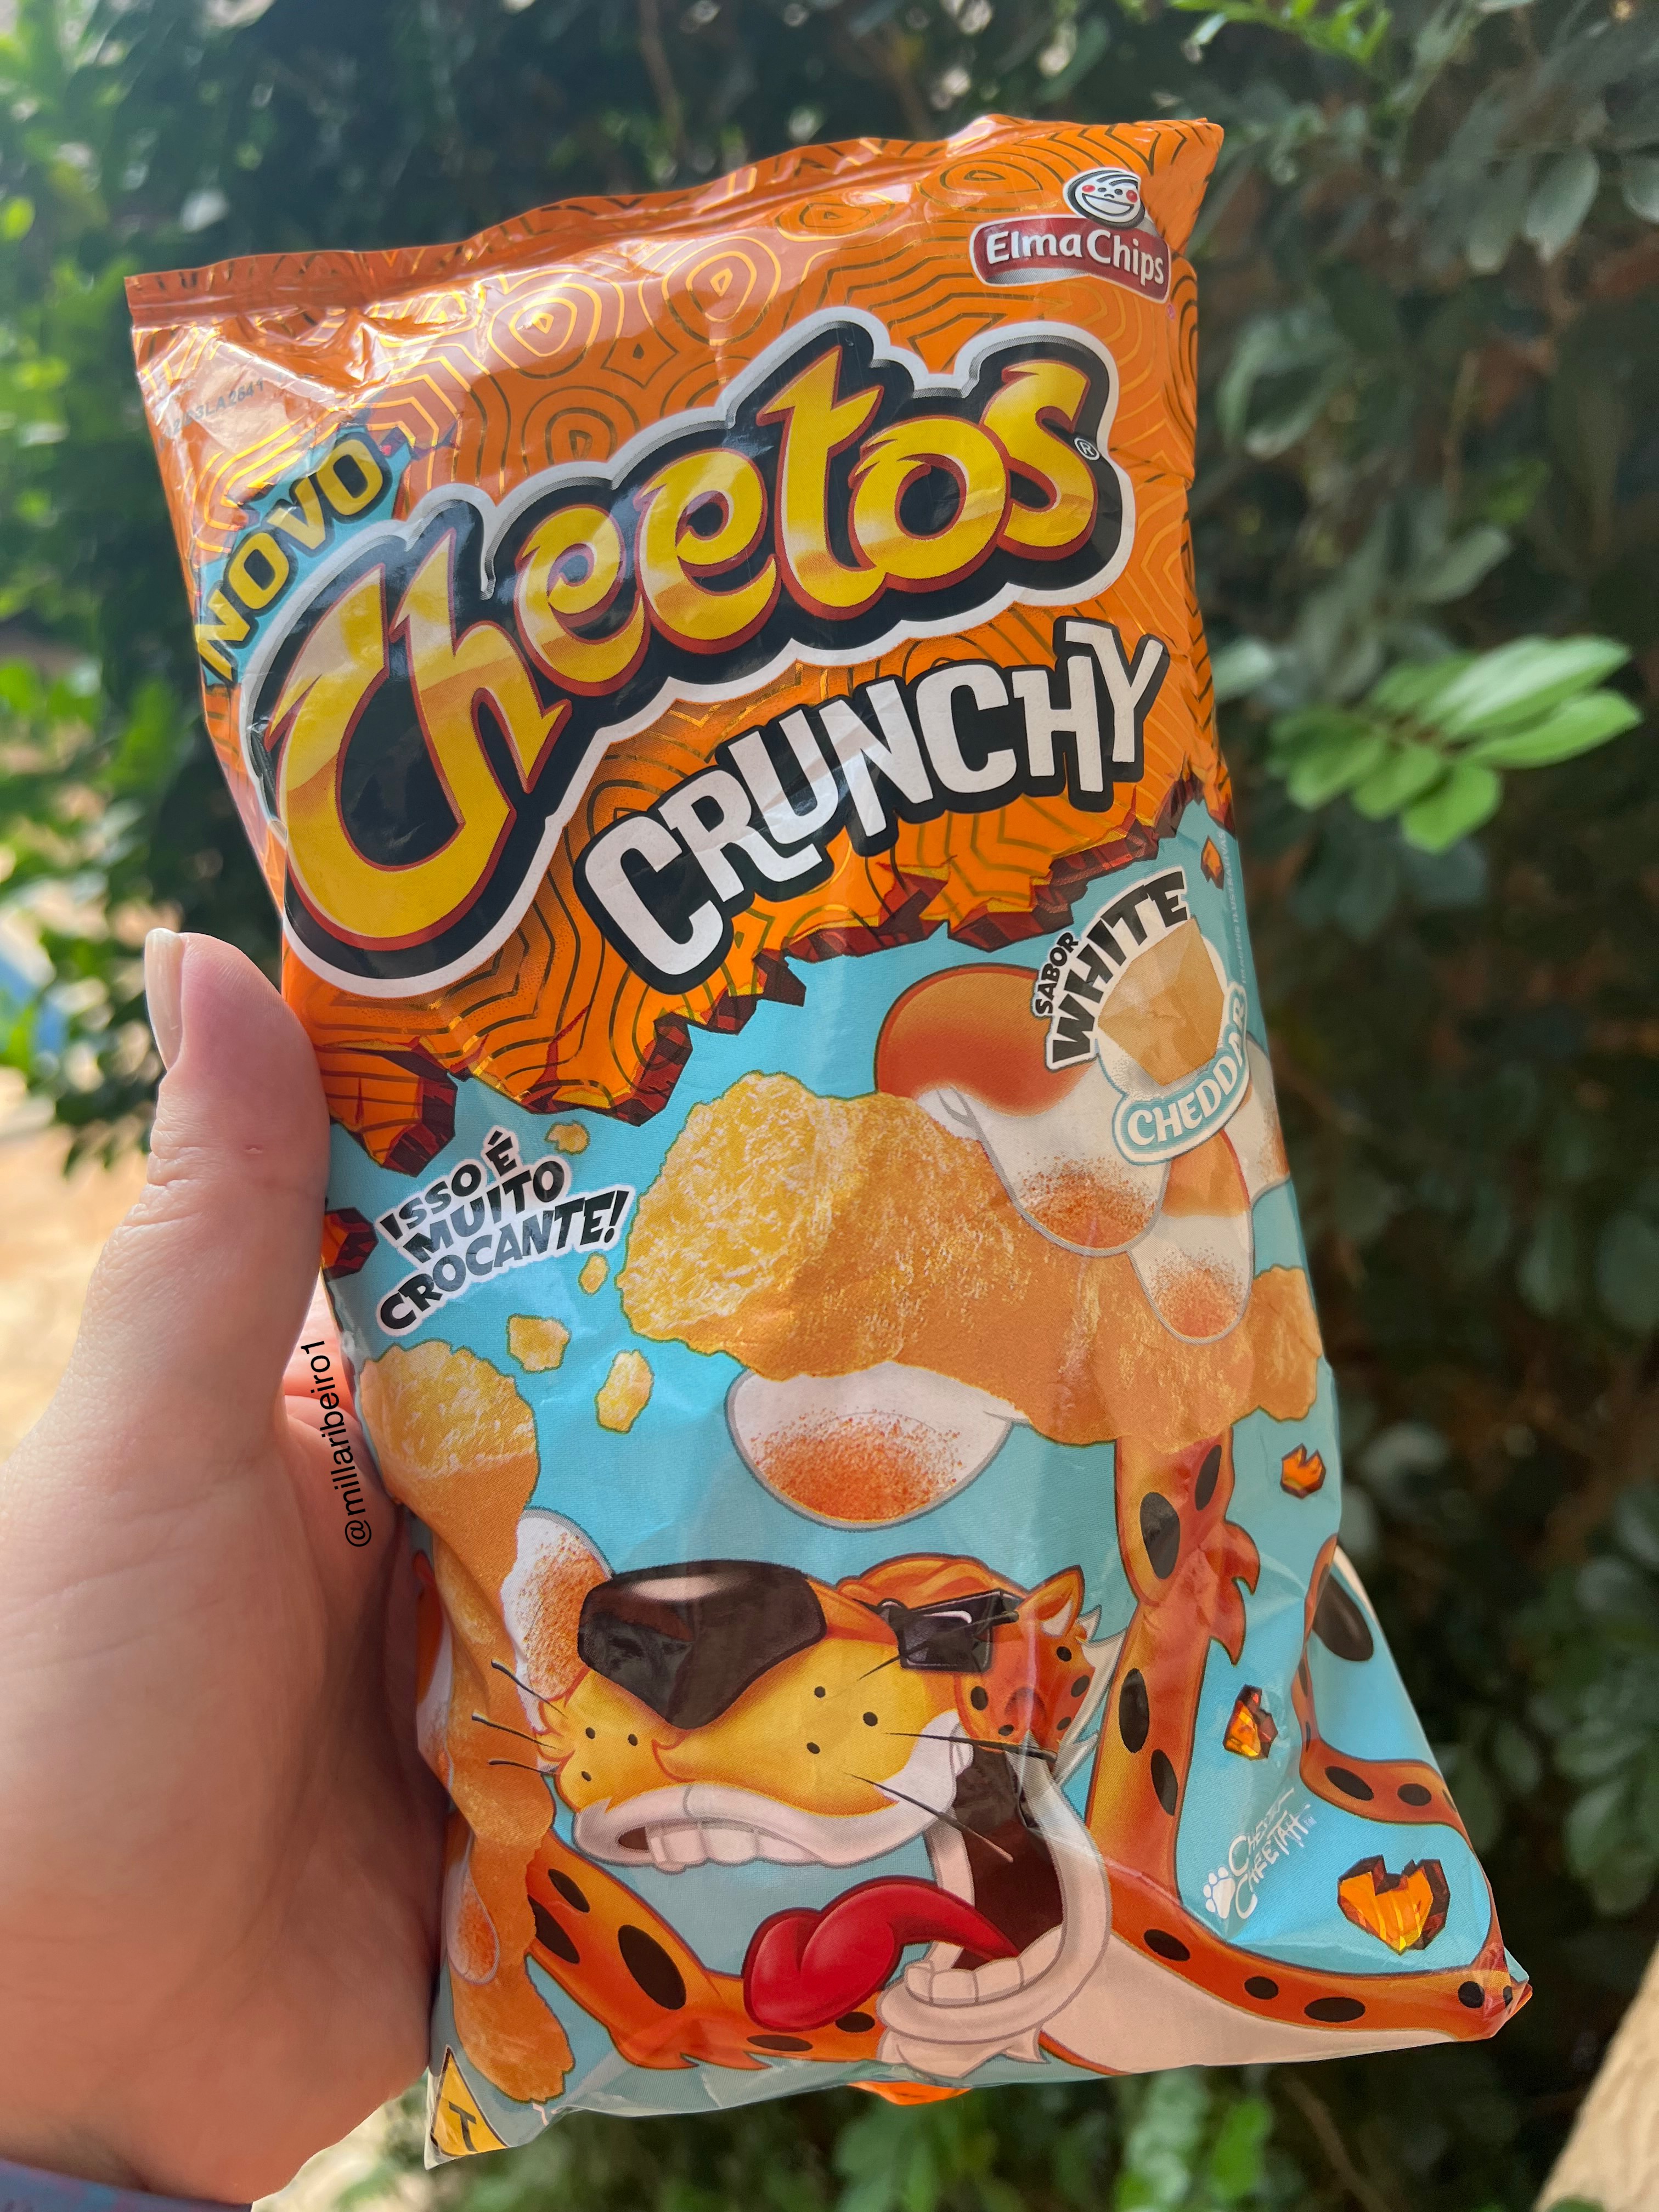 Novos Cheetos Crunchy #mercado #cheetos #alimentos #novidadesevariedad